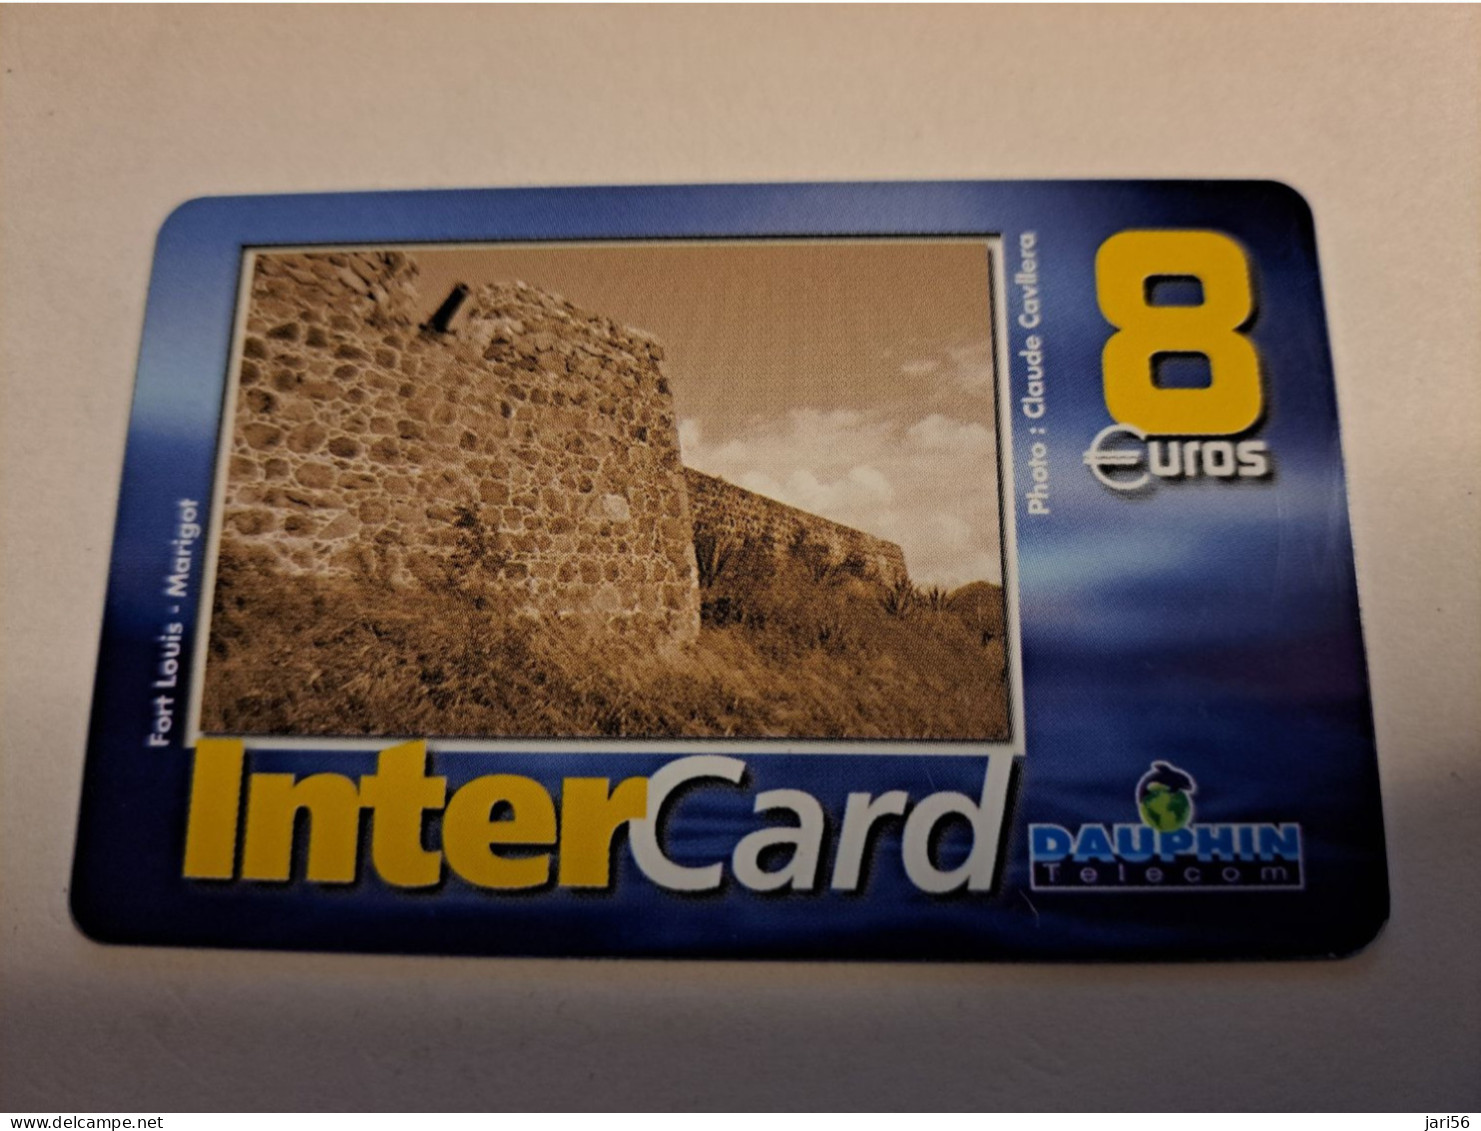 ST MARTIN / INTERCARD  8 EURO  FORT LOUIS MARIGOT          NO 087   Fine Used Card    ** 16105 ** - Antillen (Französische)